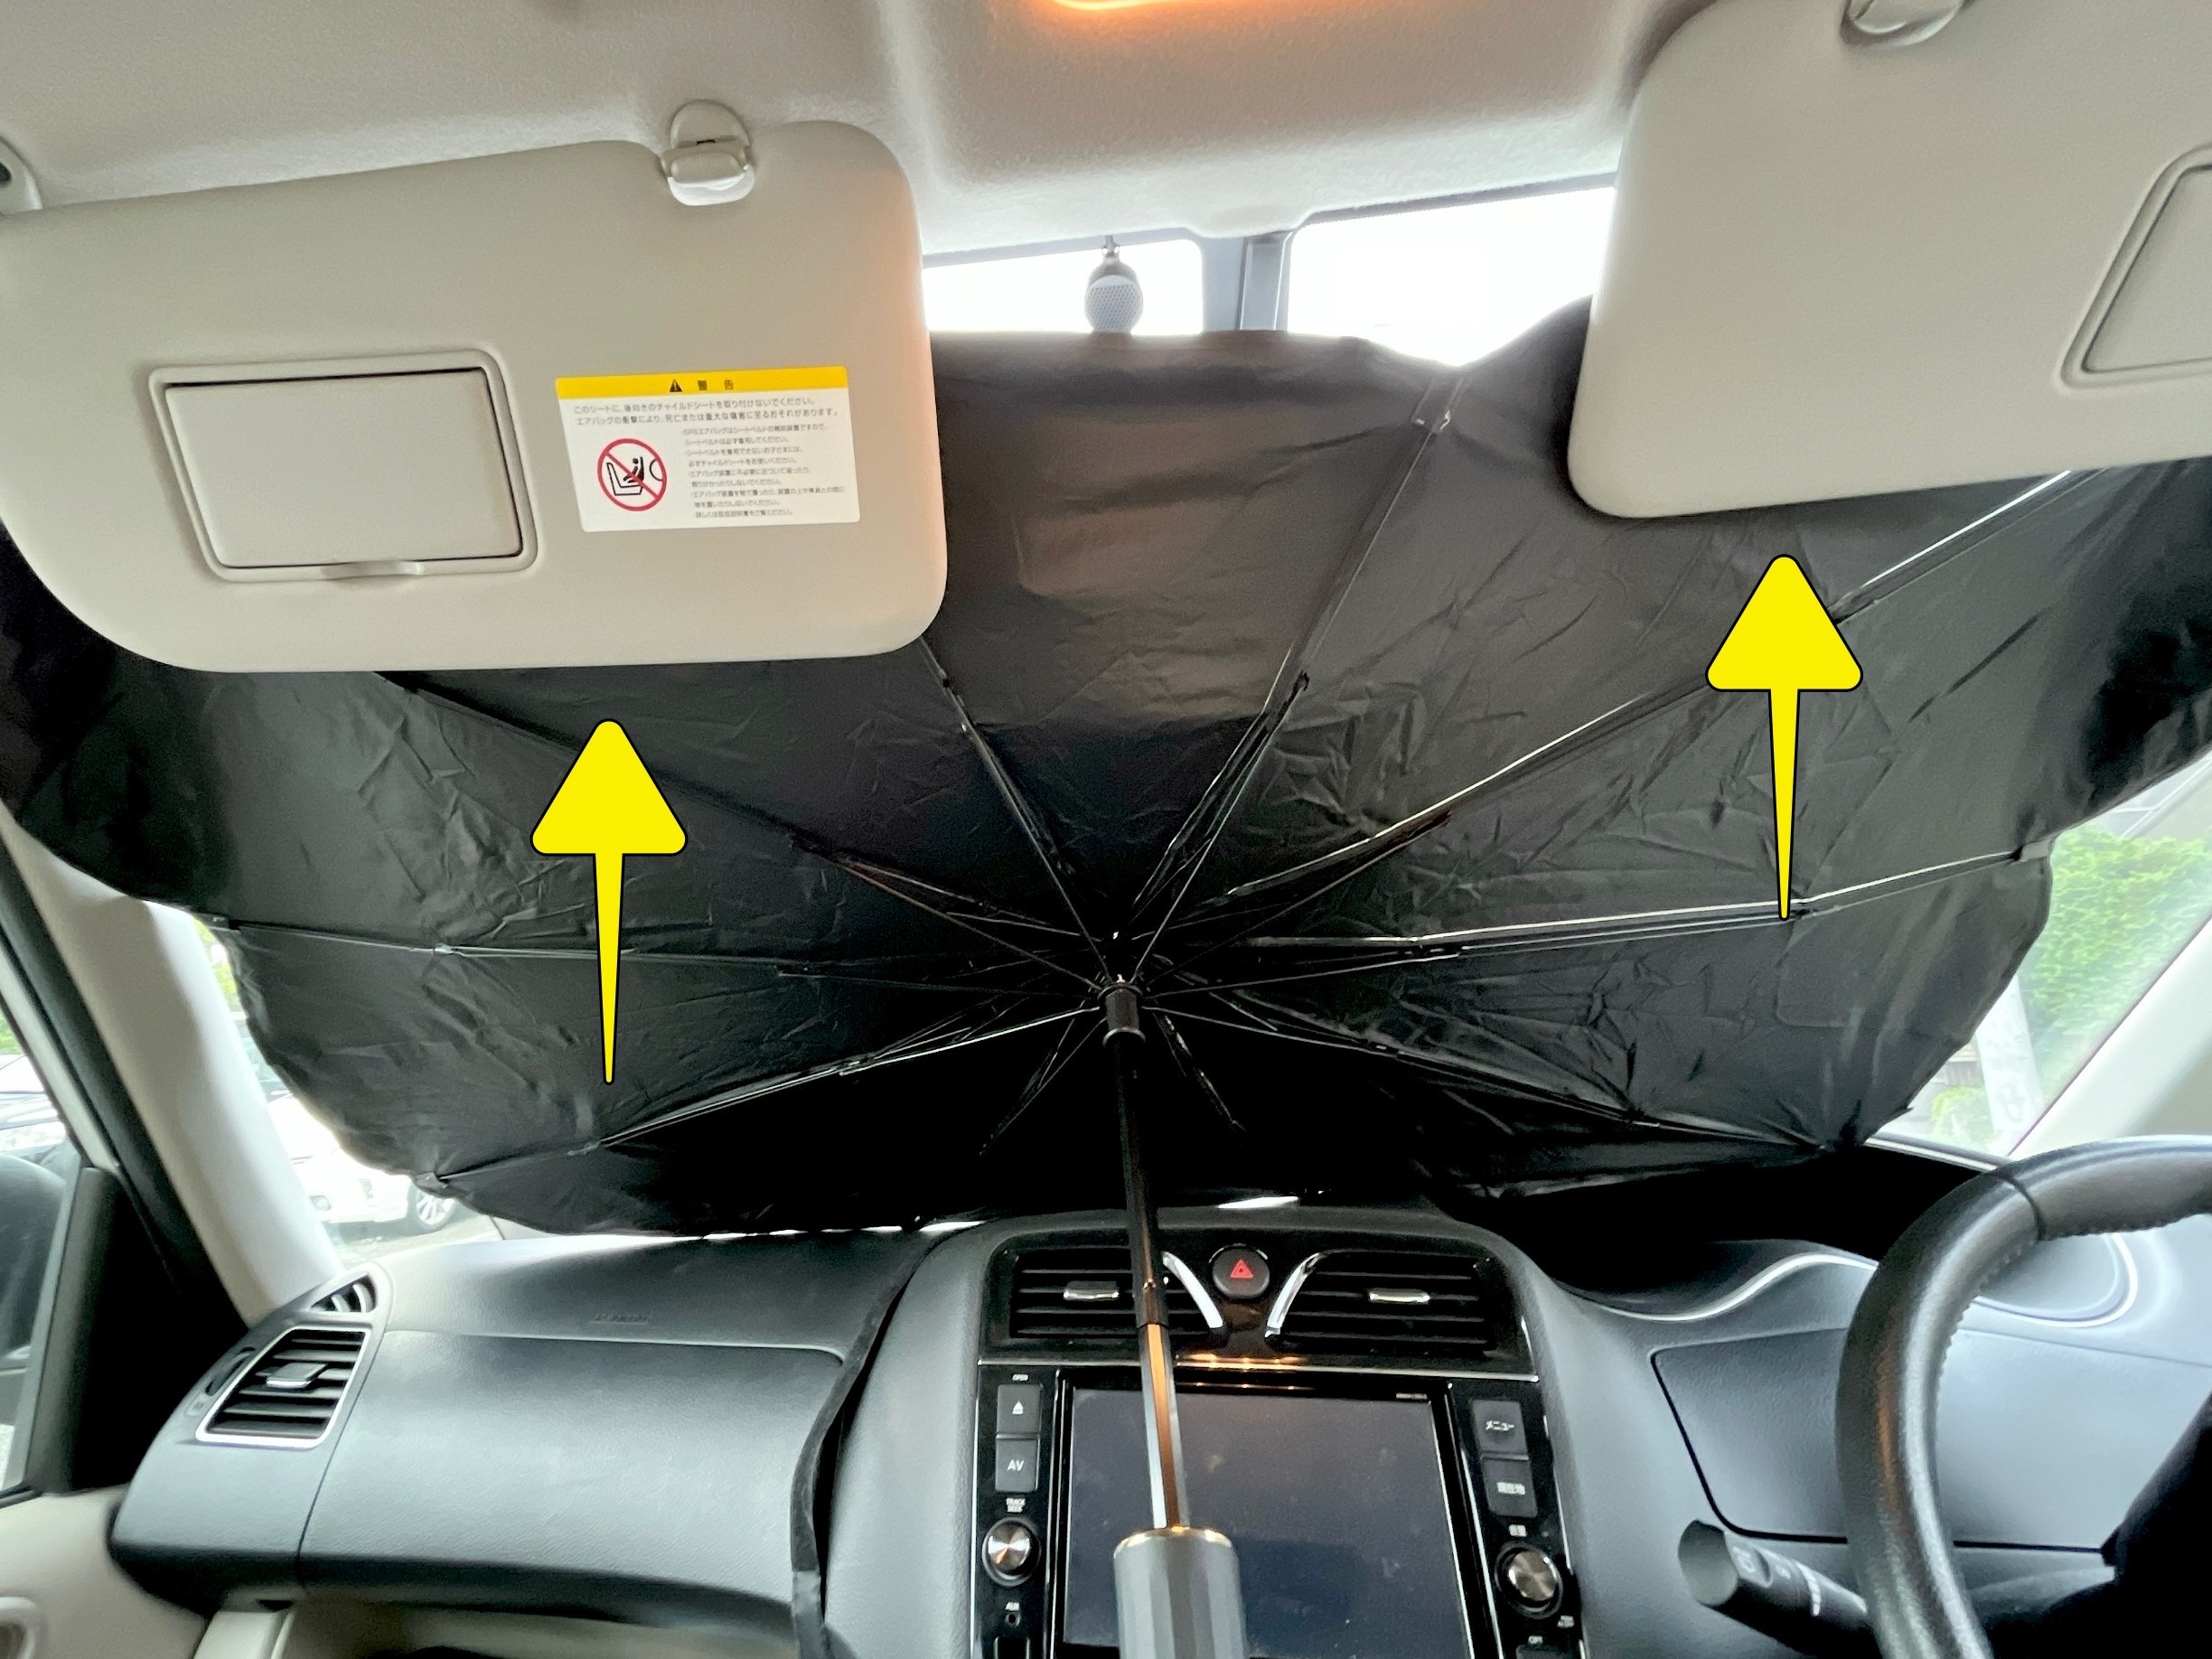 3COINS（スリーコインズ）のおすすめ便利グッズ「傘式サンシェード」自動車の暑さ対策に便利な人気のカー用品